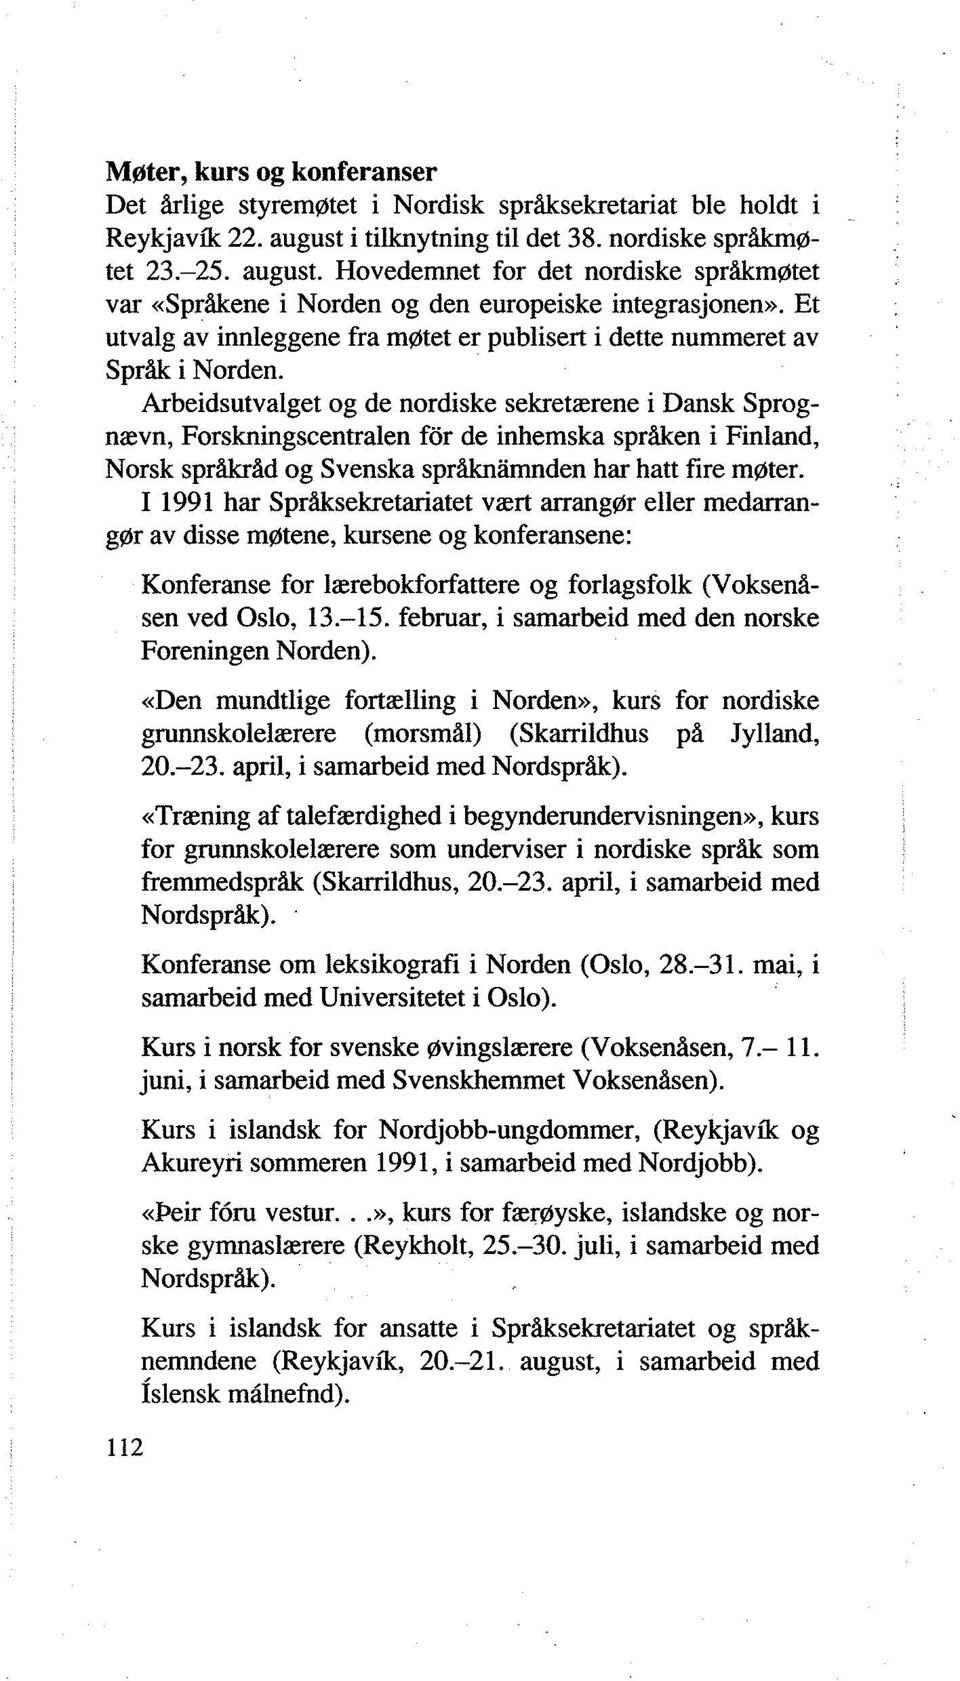 Et utvalg av innleggene fra møtet er publisert i dette nummeret av Språk i Norden.